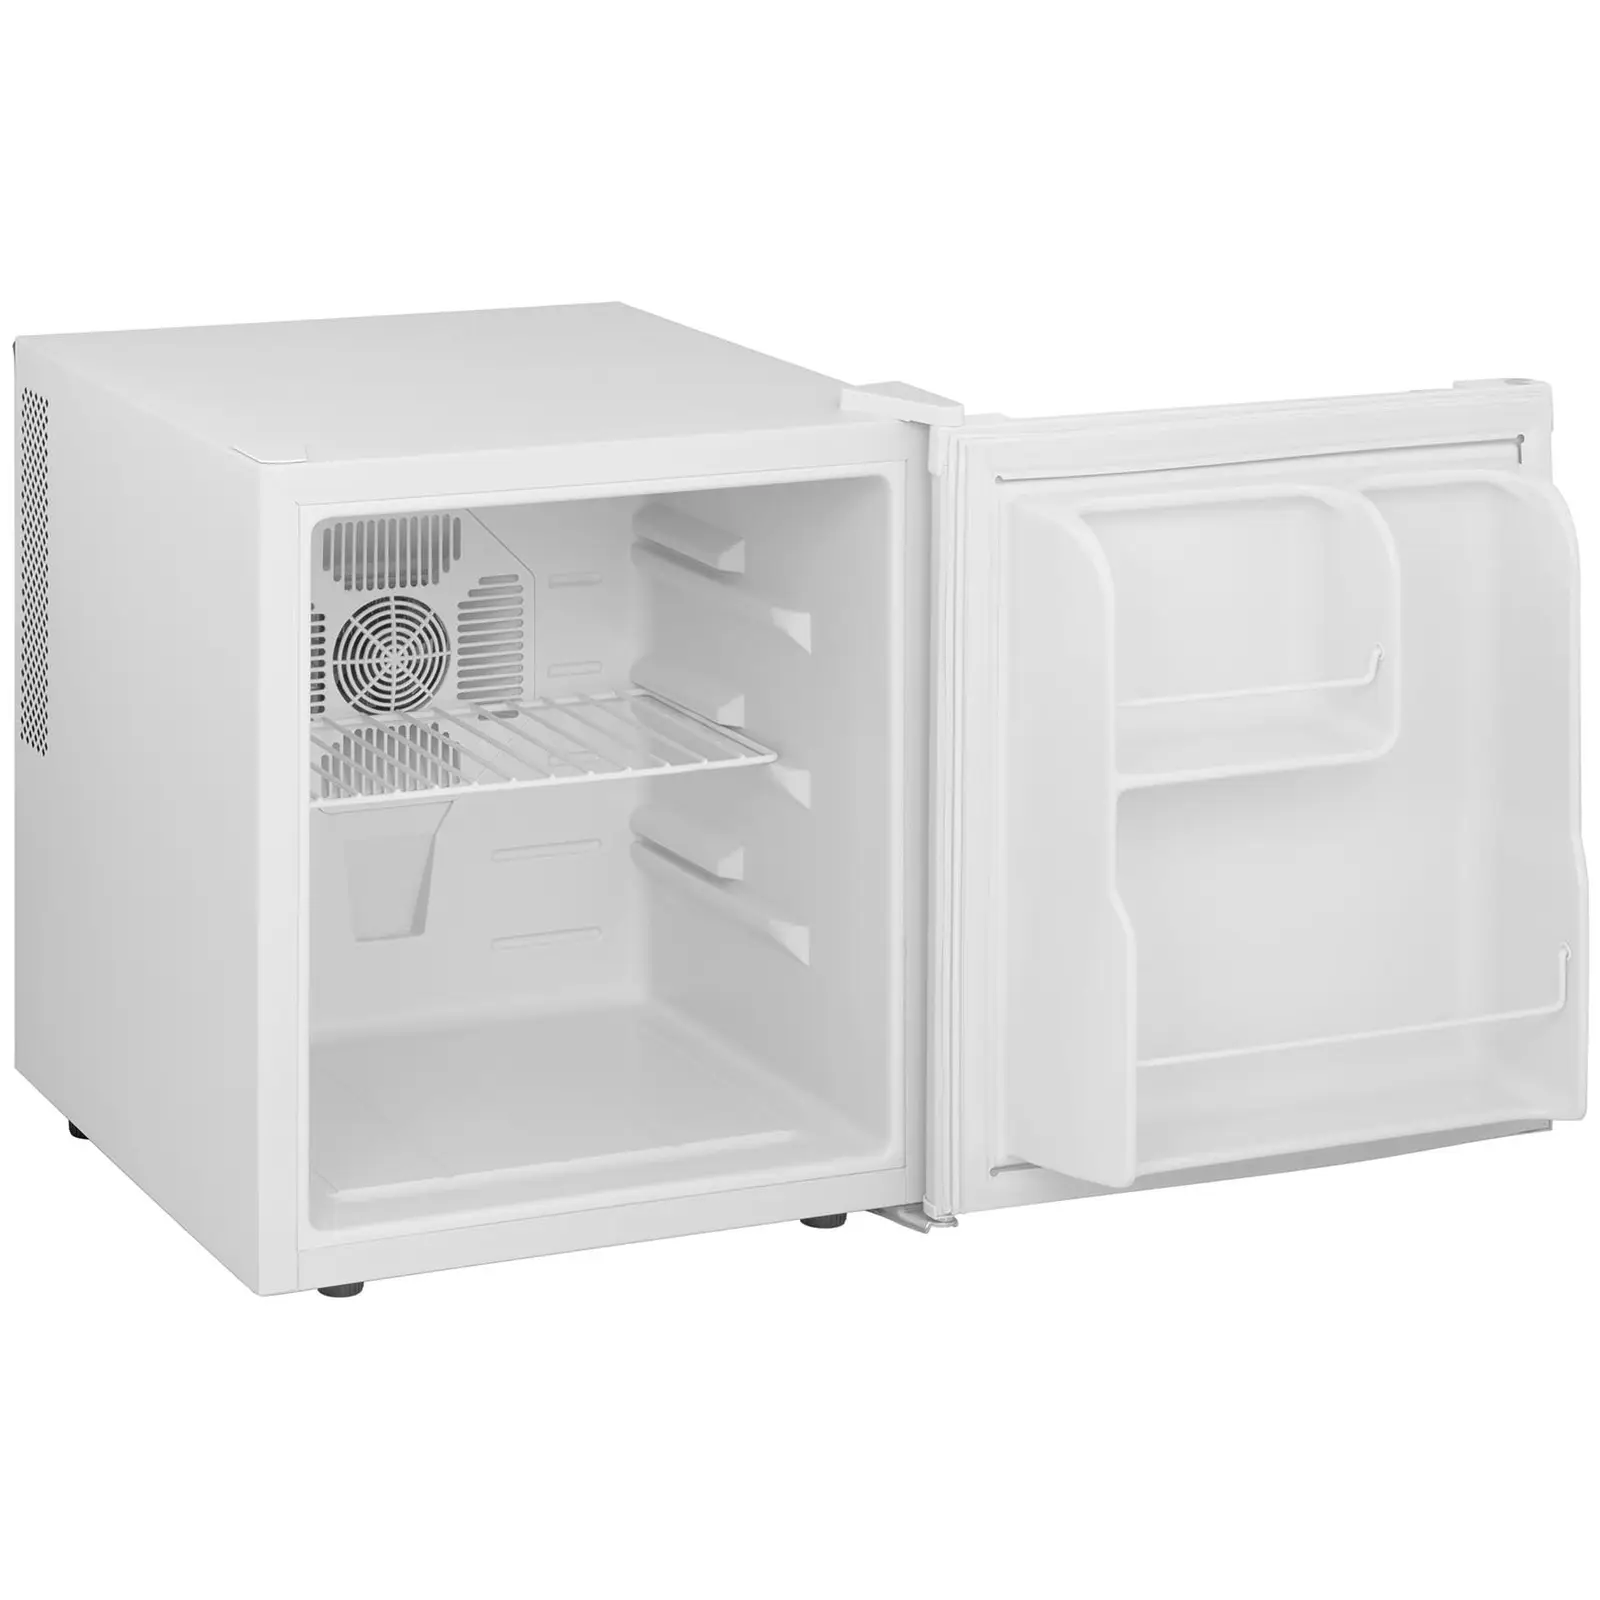 Mini frigo - Minibar - 45 l - Bianco - Royal Catering